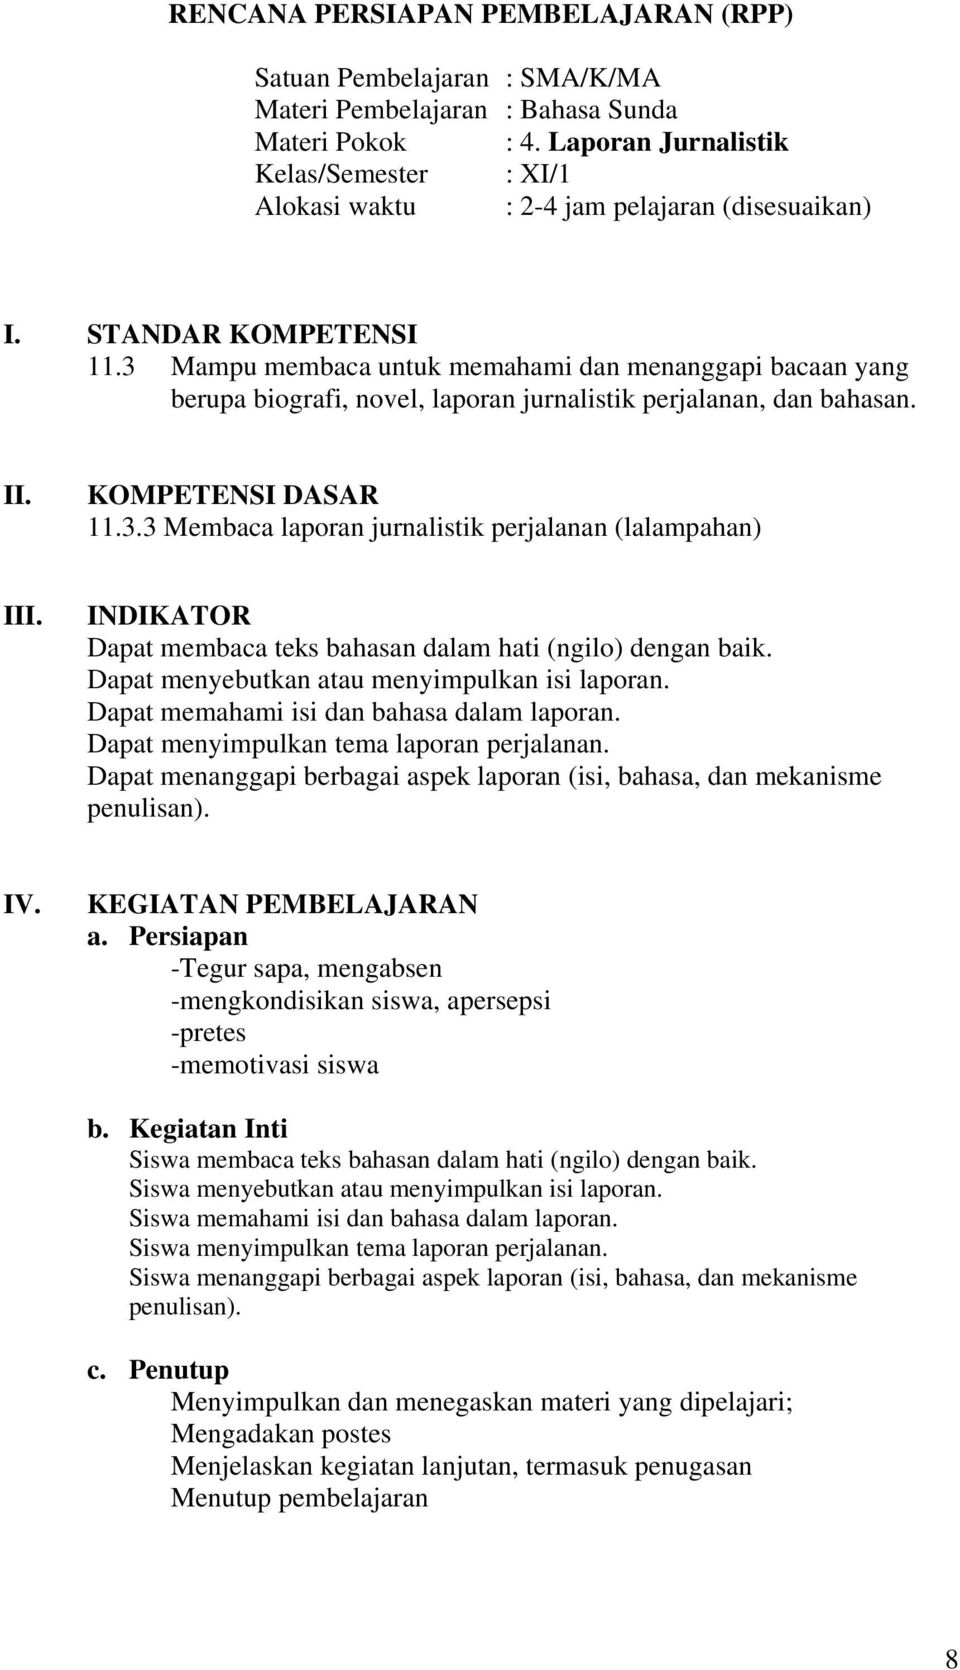 Contoh Laporan Kegiatan Bahasa Sunda Download Contoh Lengkap Gratis